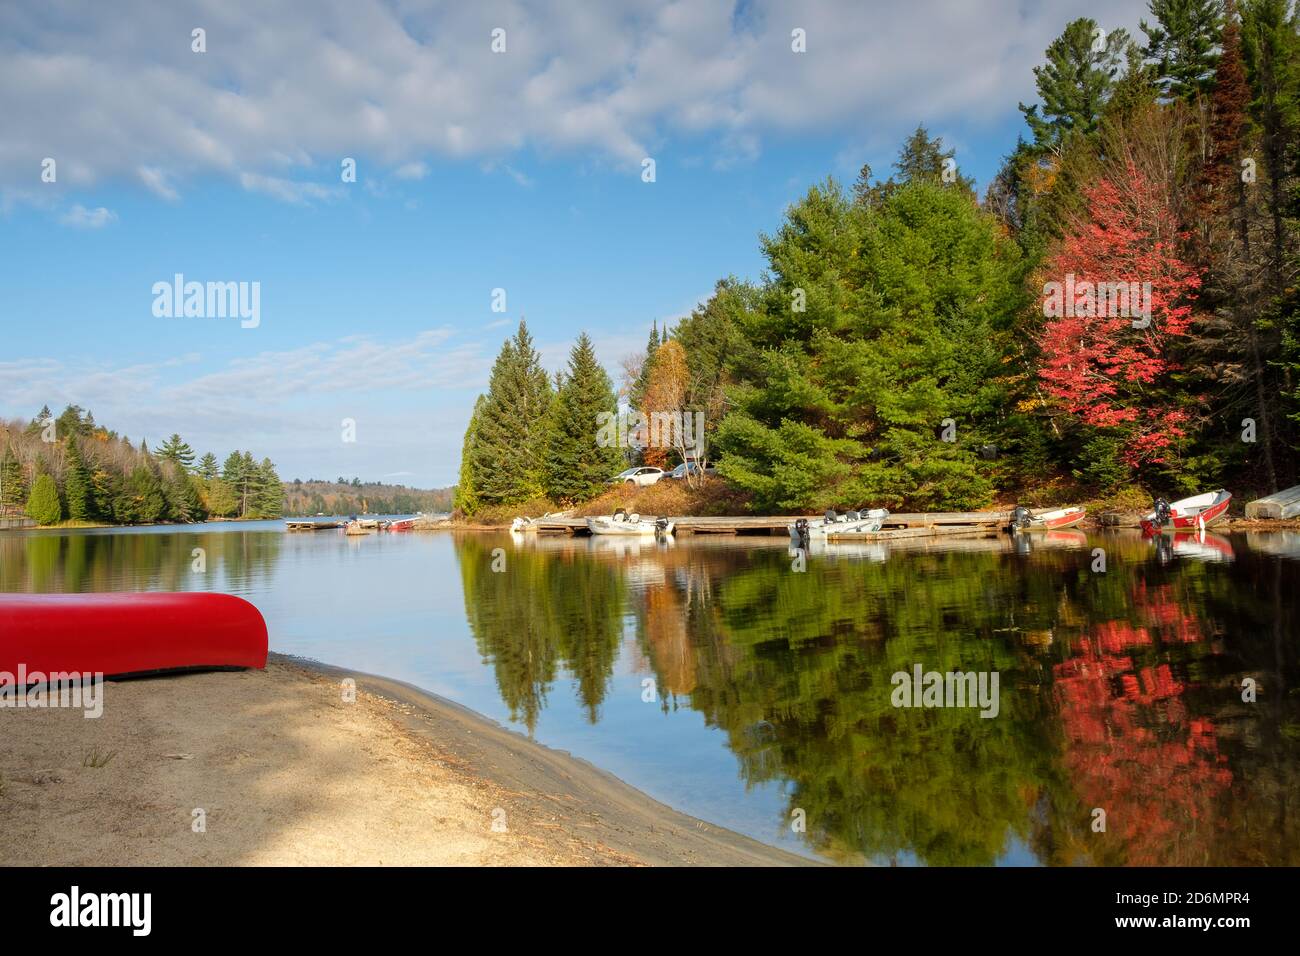 Automne au Canada - canoë rouge et arbres se reflètent un lac Banque D'Images